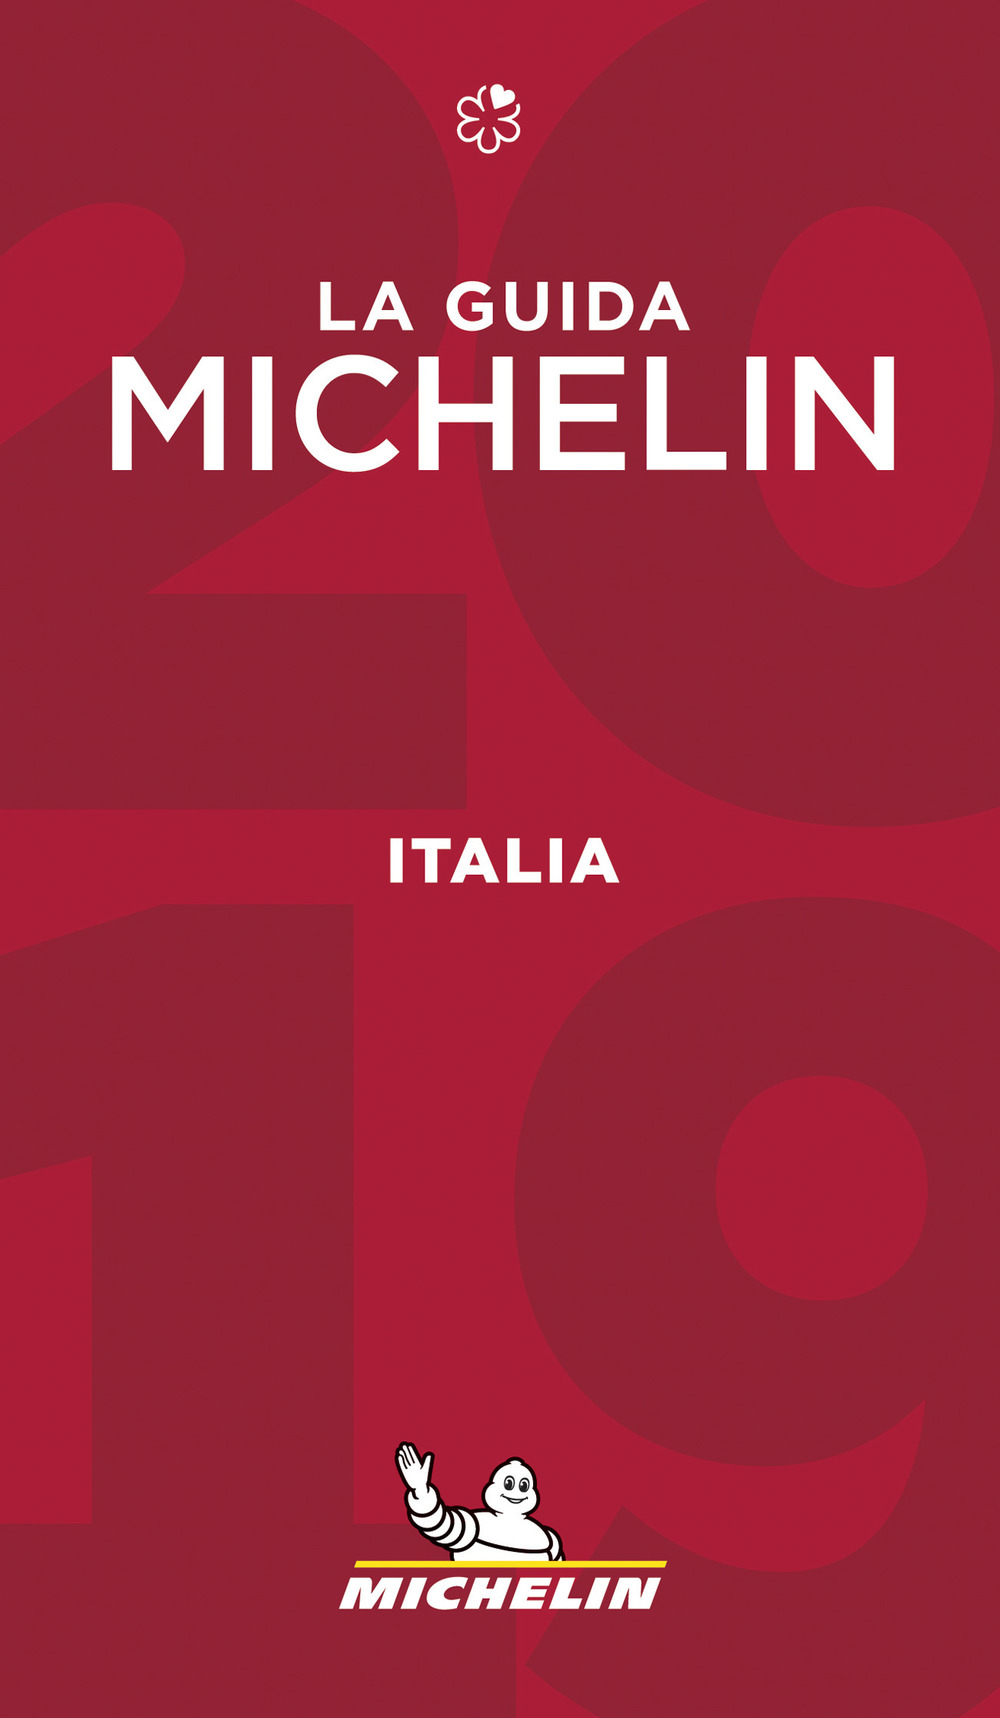 Italia 2019. La guida Michelin